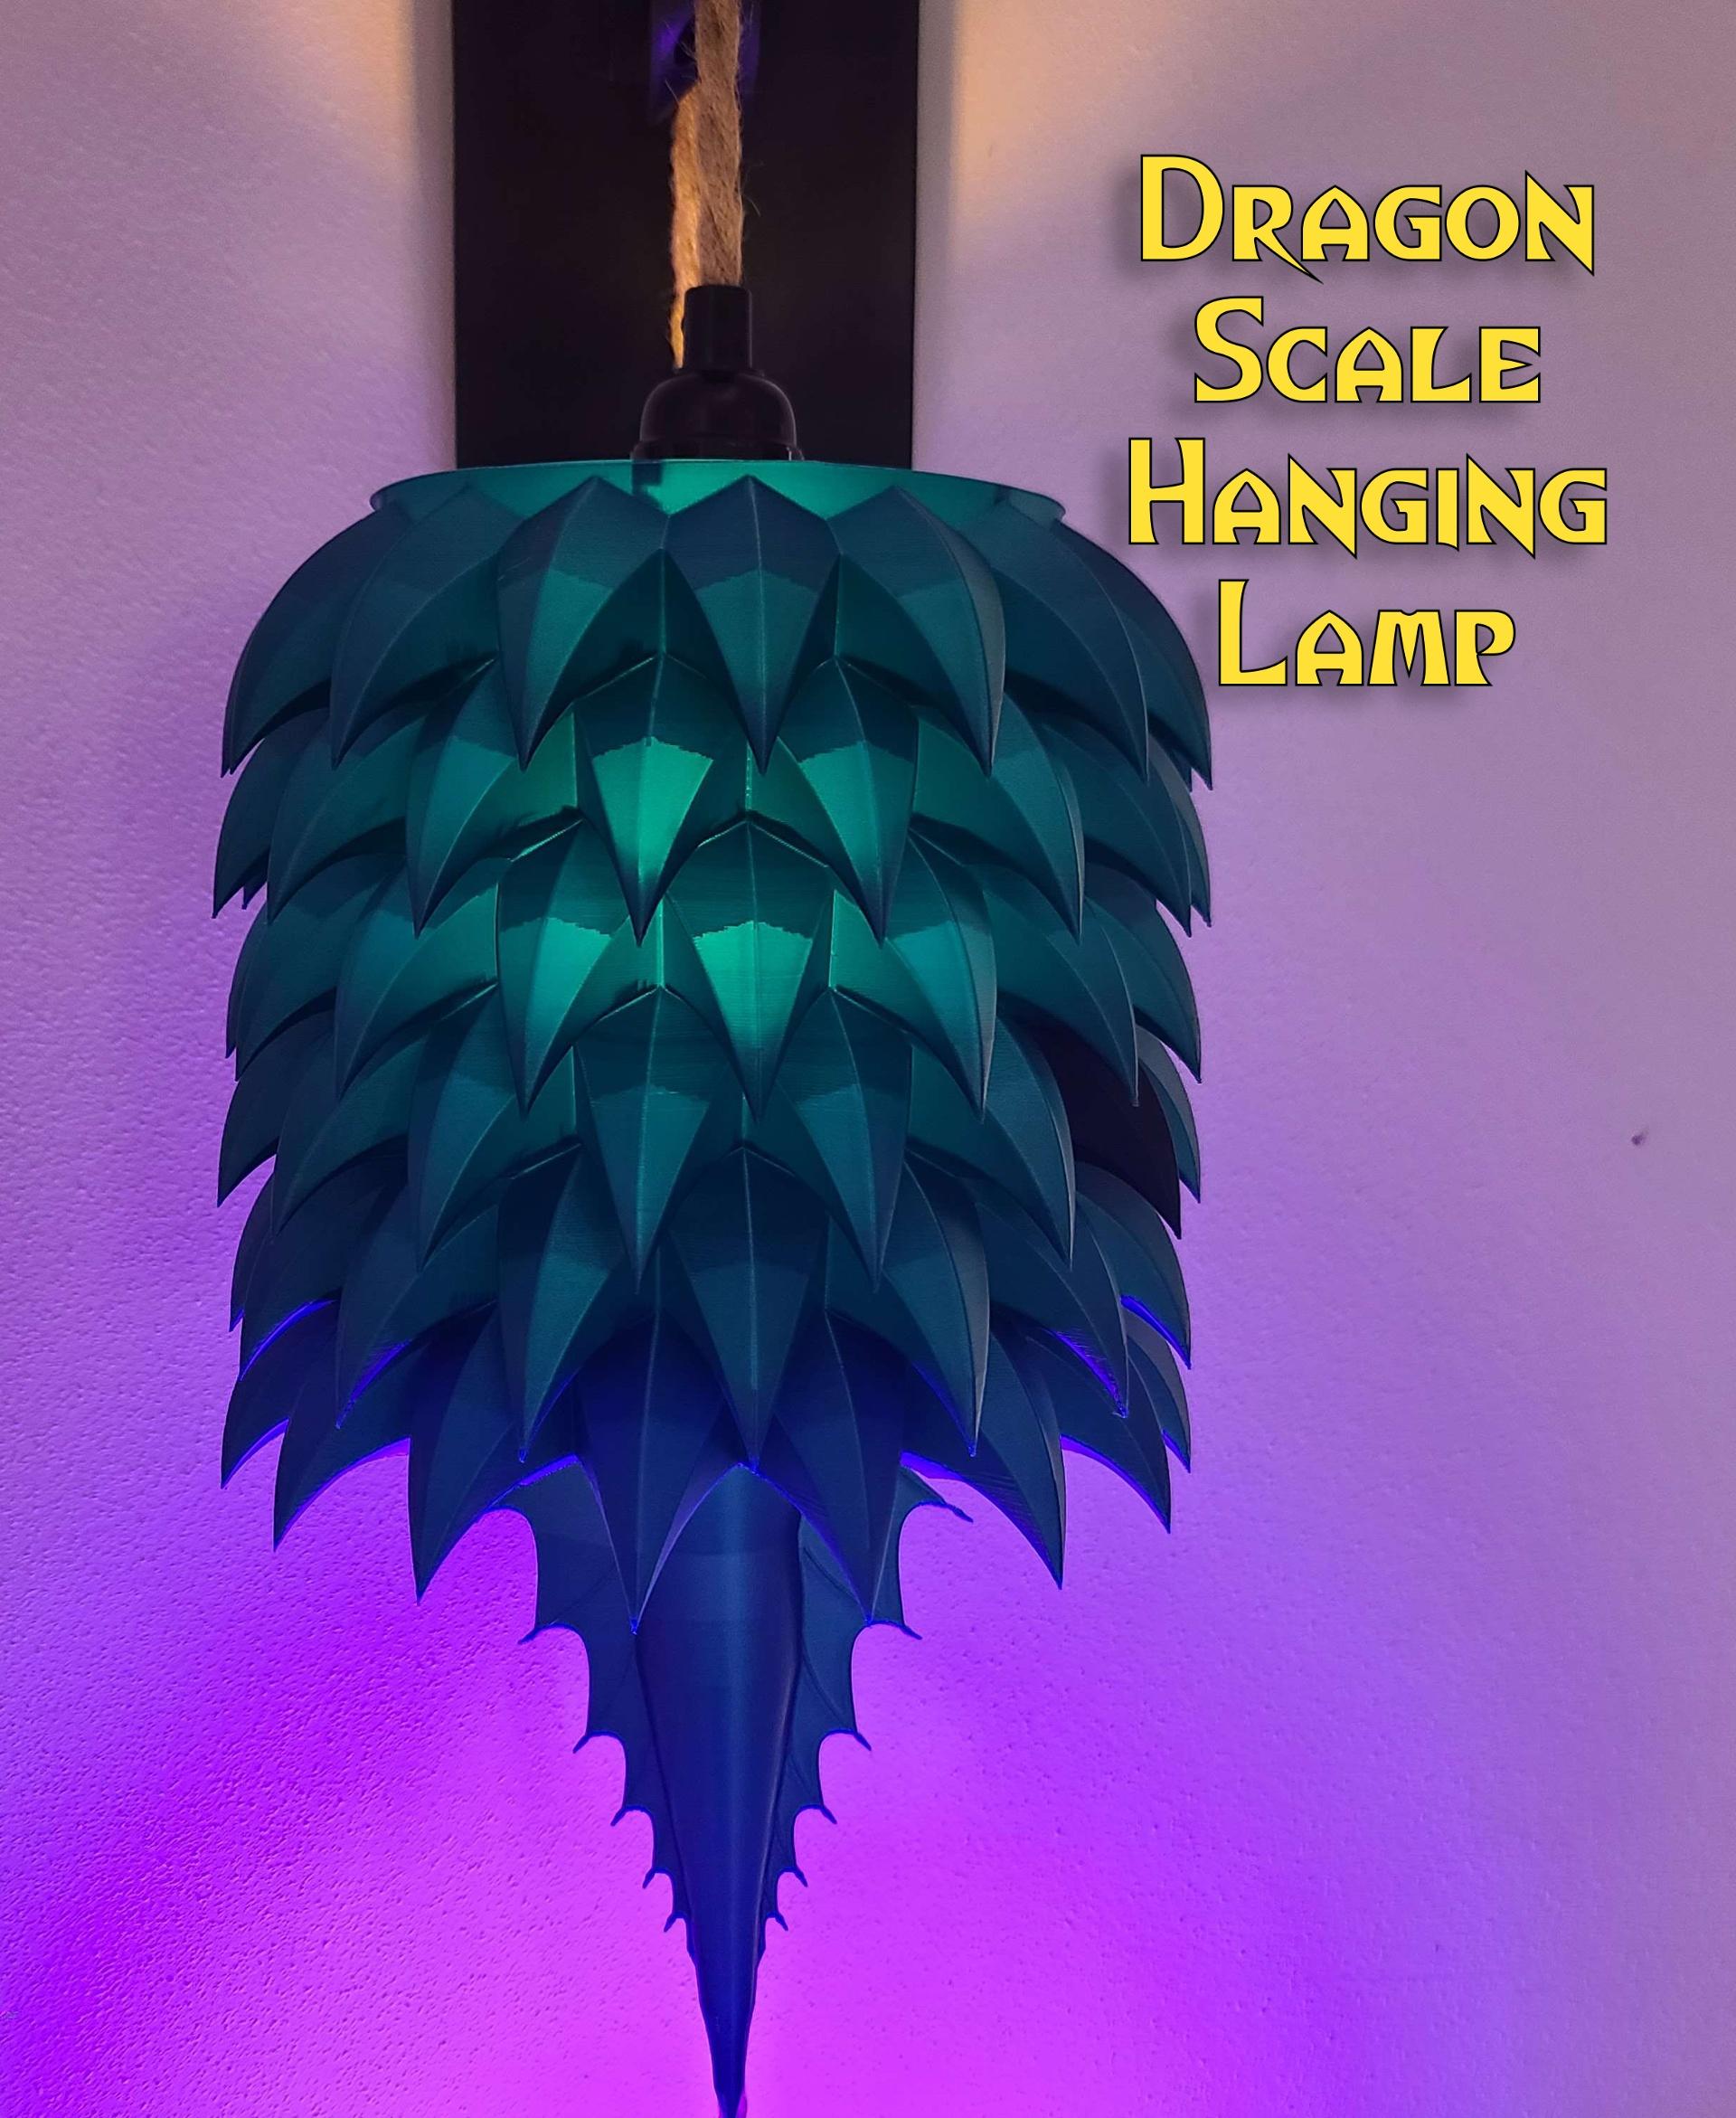 Dragon Scale Hanging Lamp #FunctionalArt - Dragon Scale Hanging Lamp - 3d model